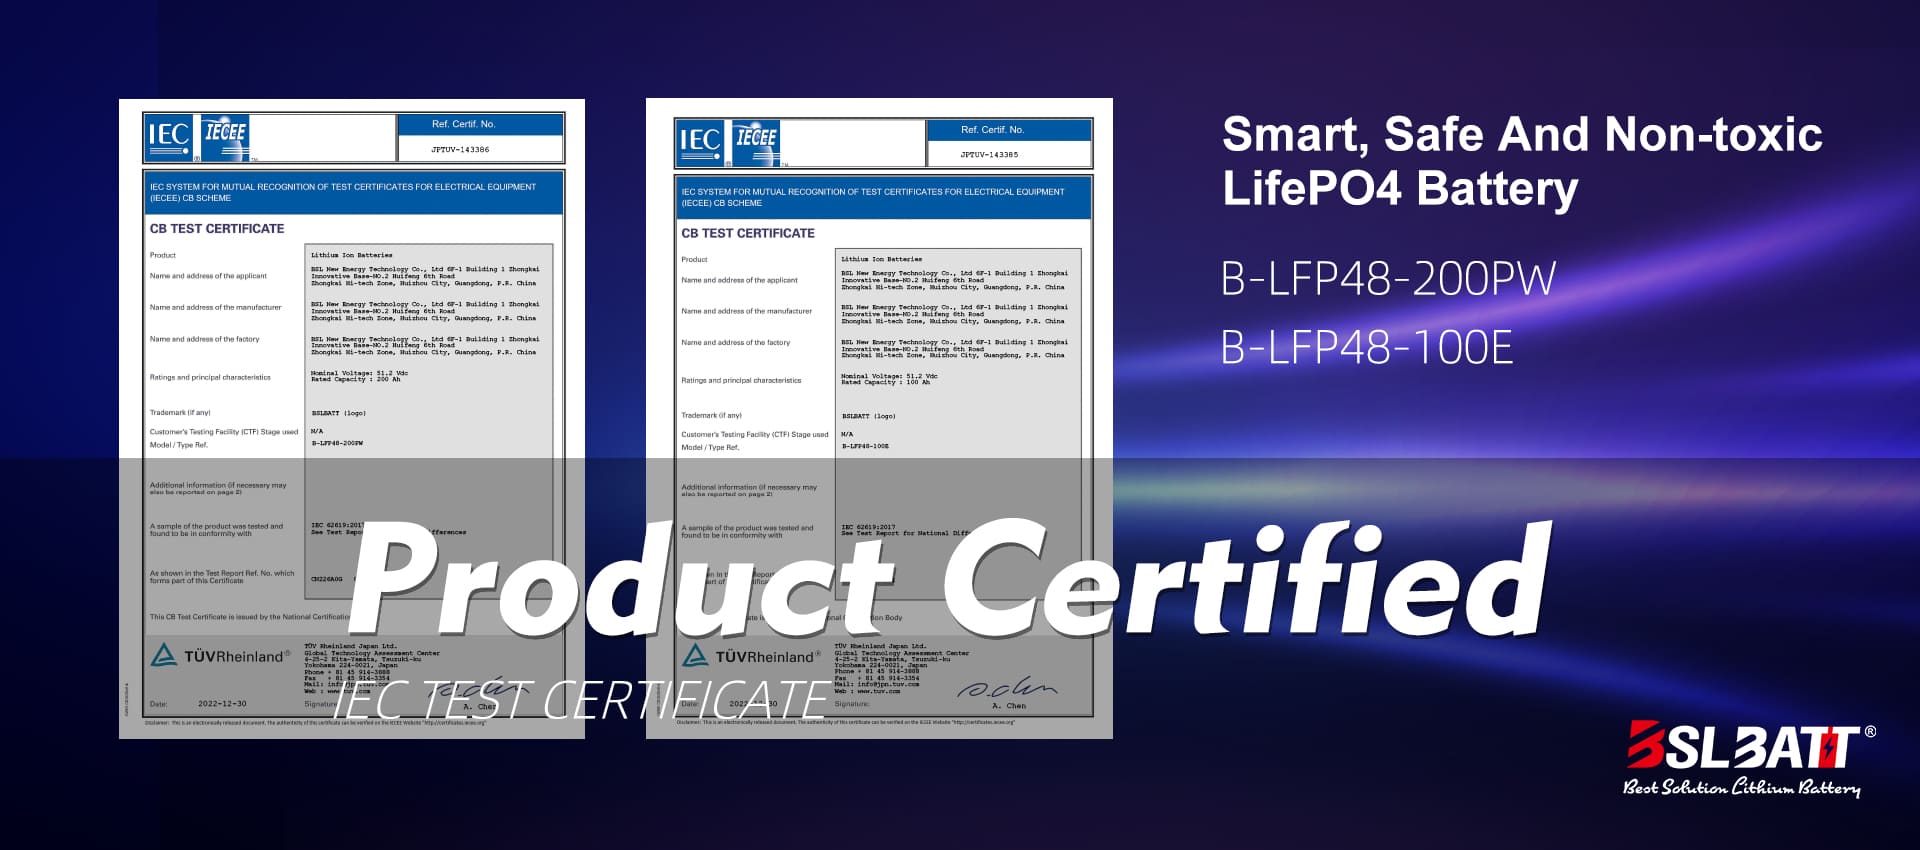 BSLBATT logra la certificación IEC 62619 en su batería de 48V 100AH ​​Lifepo4 